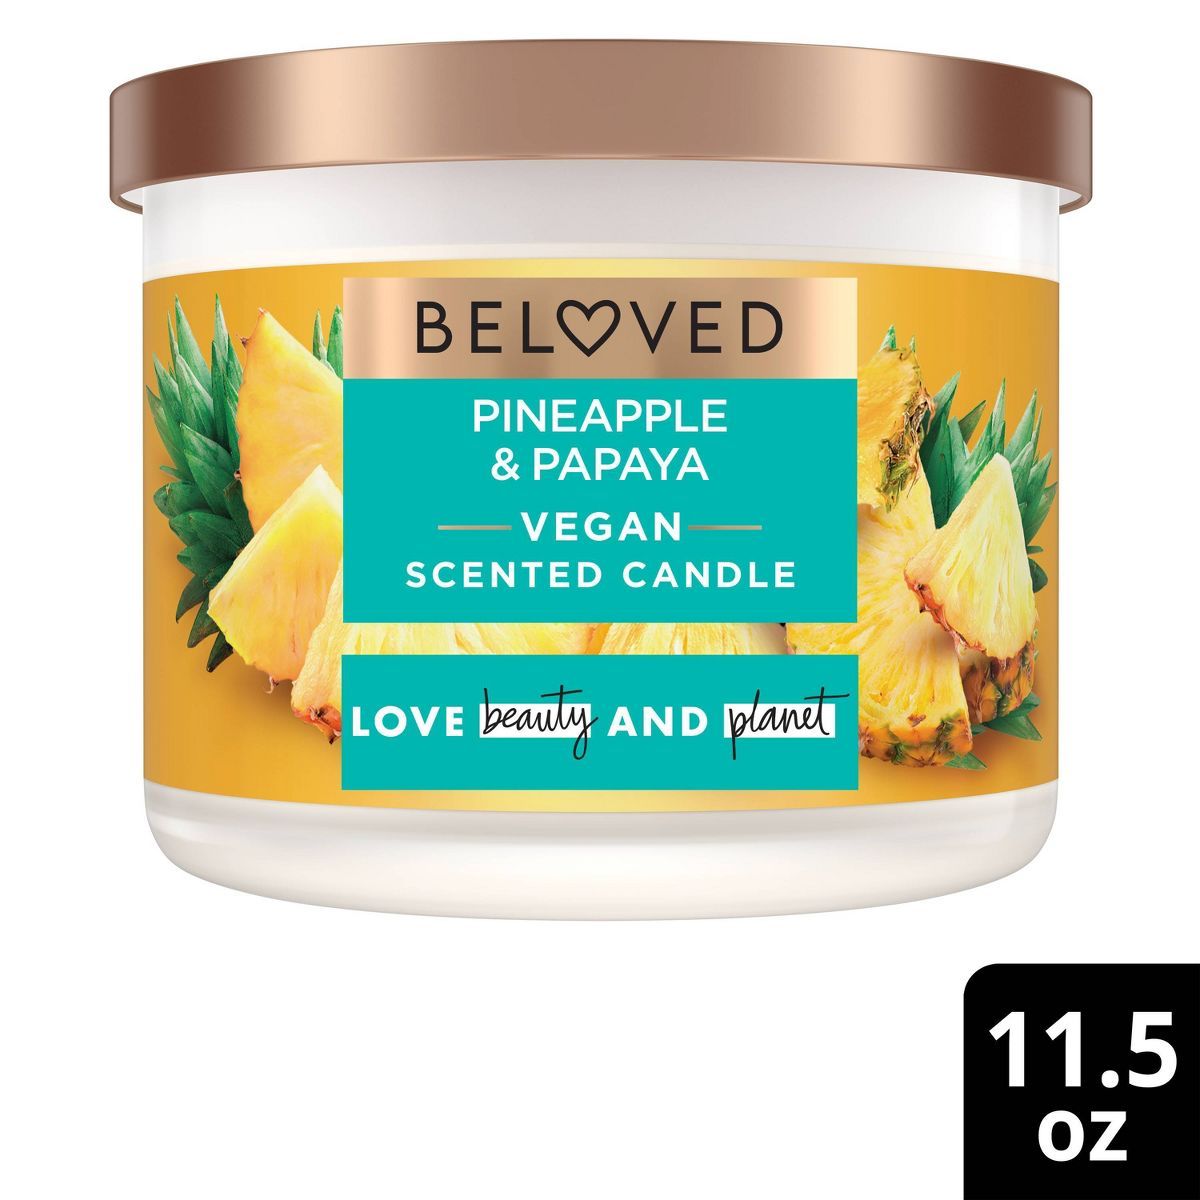 Beloved Pineapple & Papaya 2-Wick Vegan Candle - 11.5oz | Target